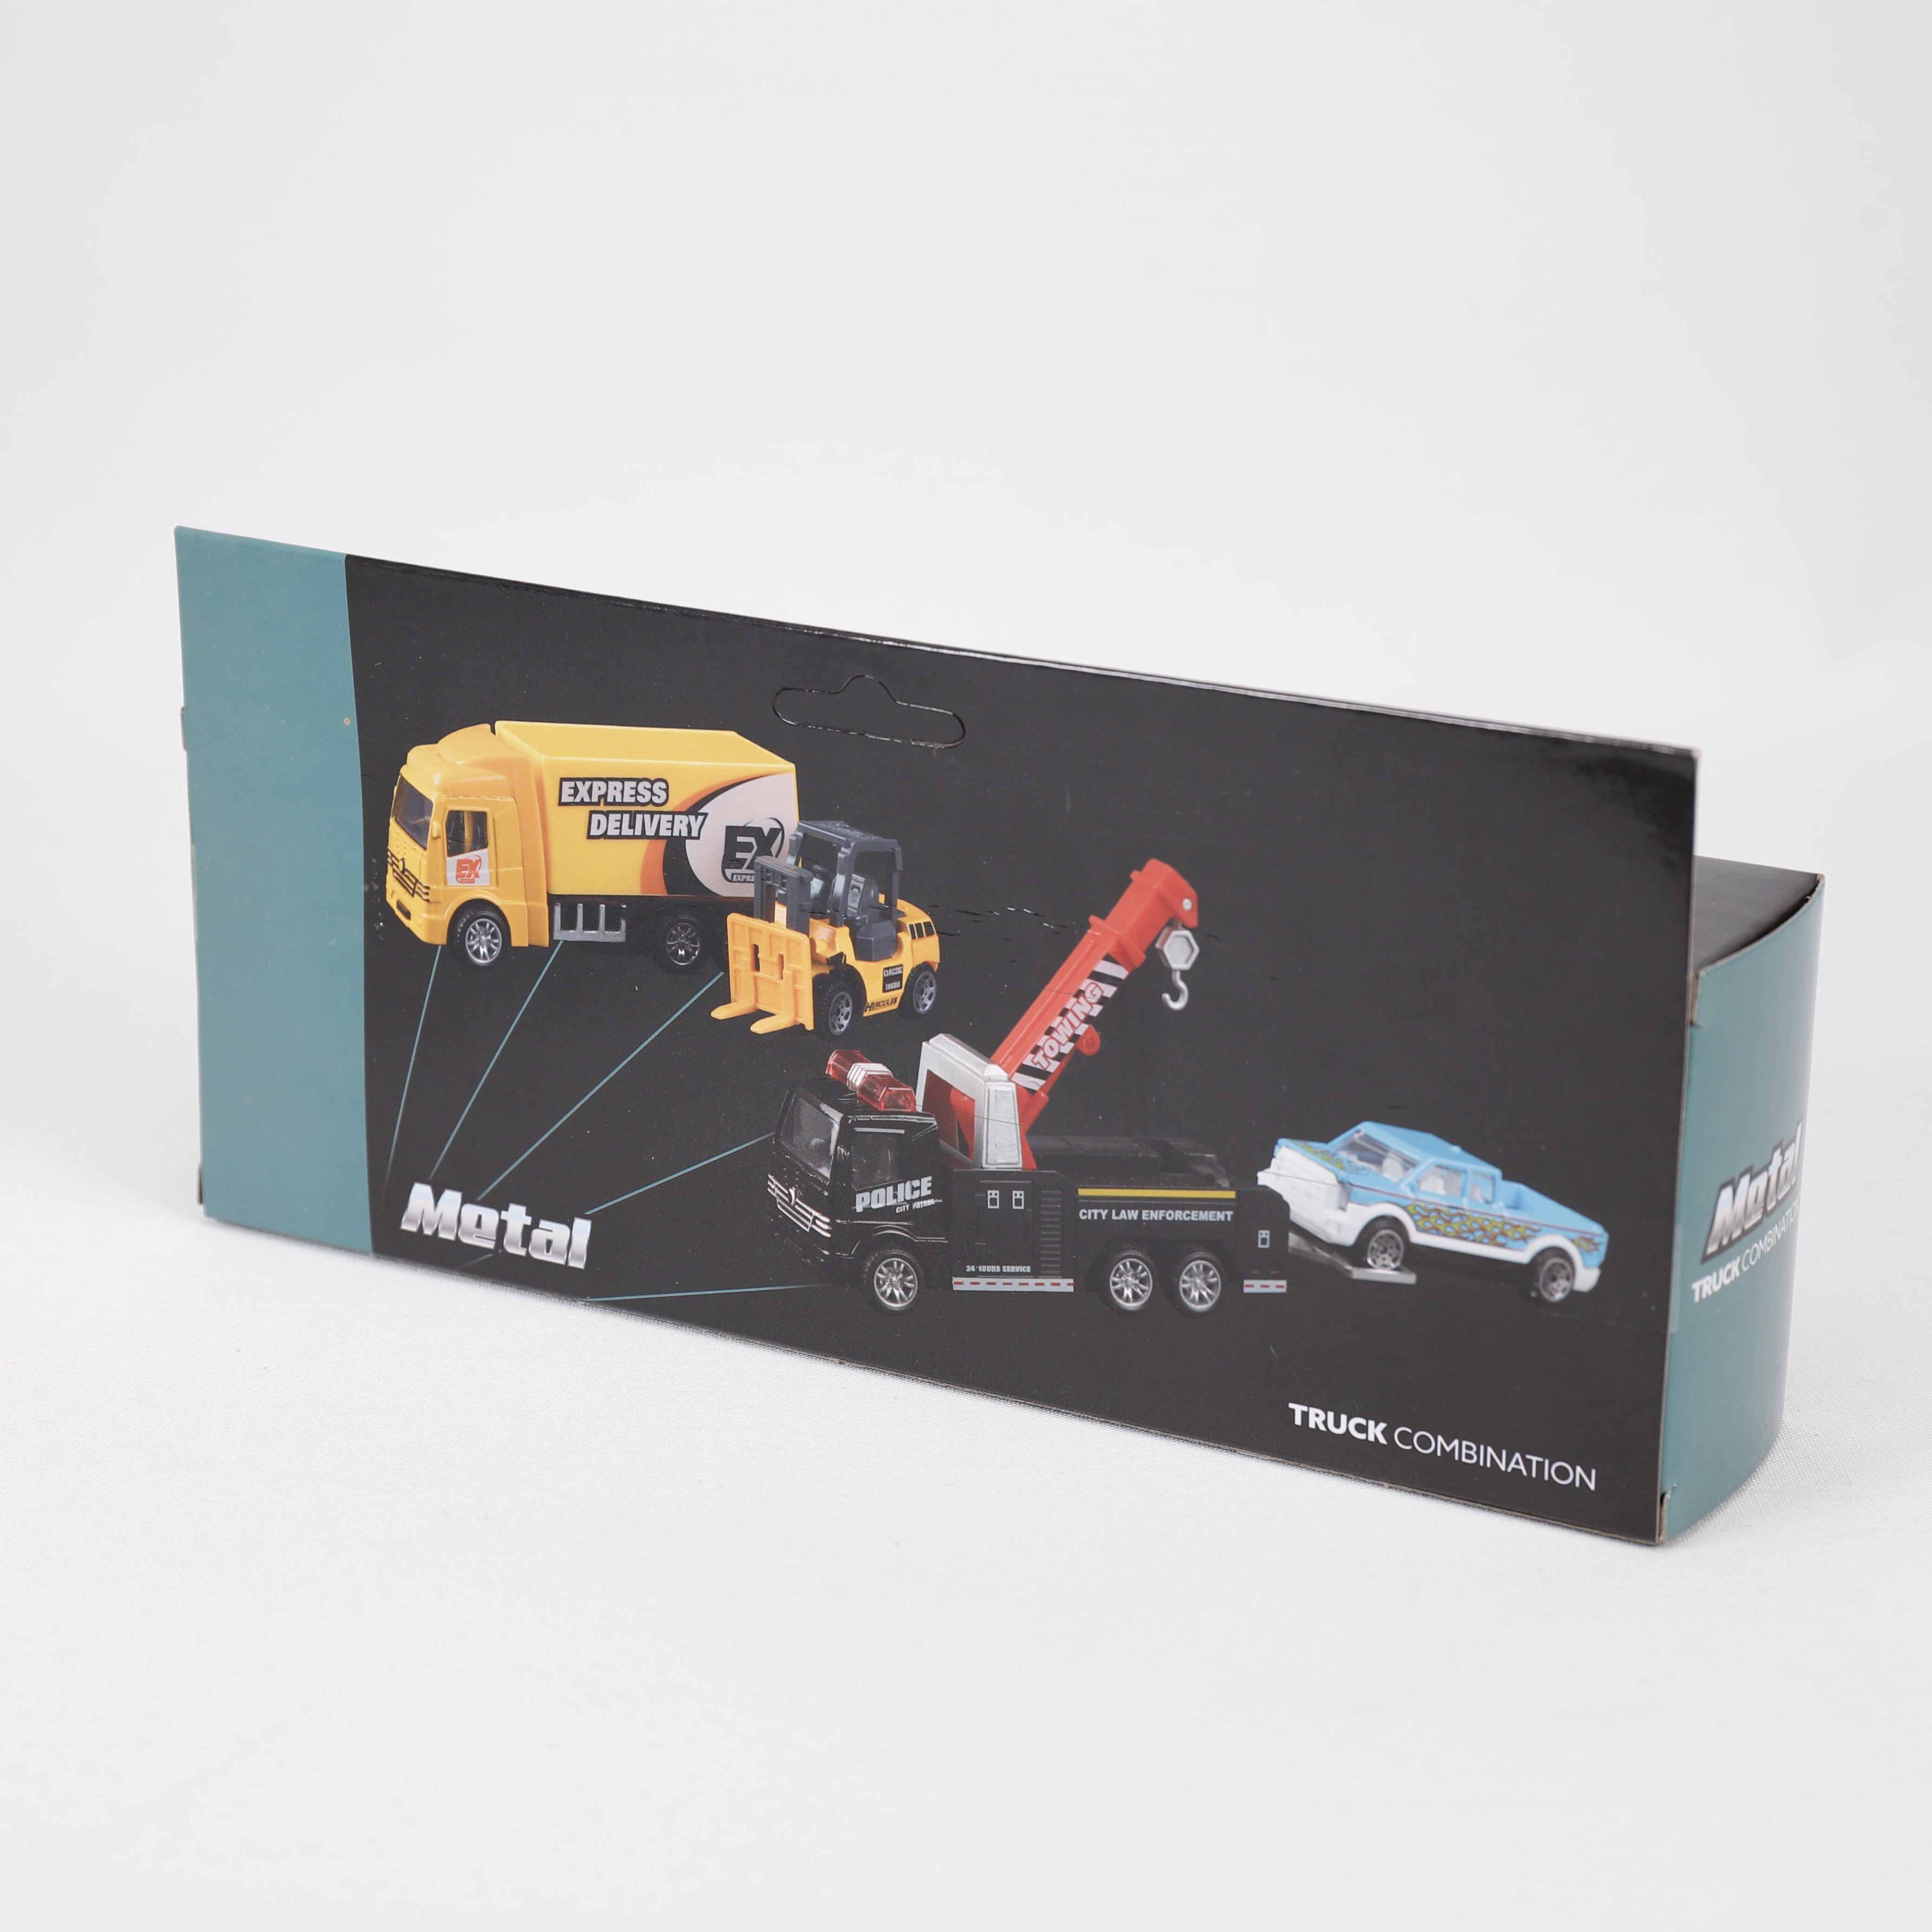 LKW Metall & Auto11 x 24 cm, ab 3 Jahre, Spielzeug, Toi-Toys.